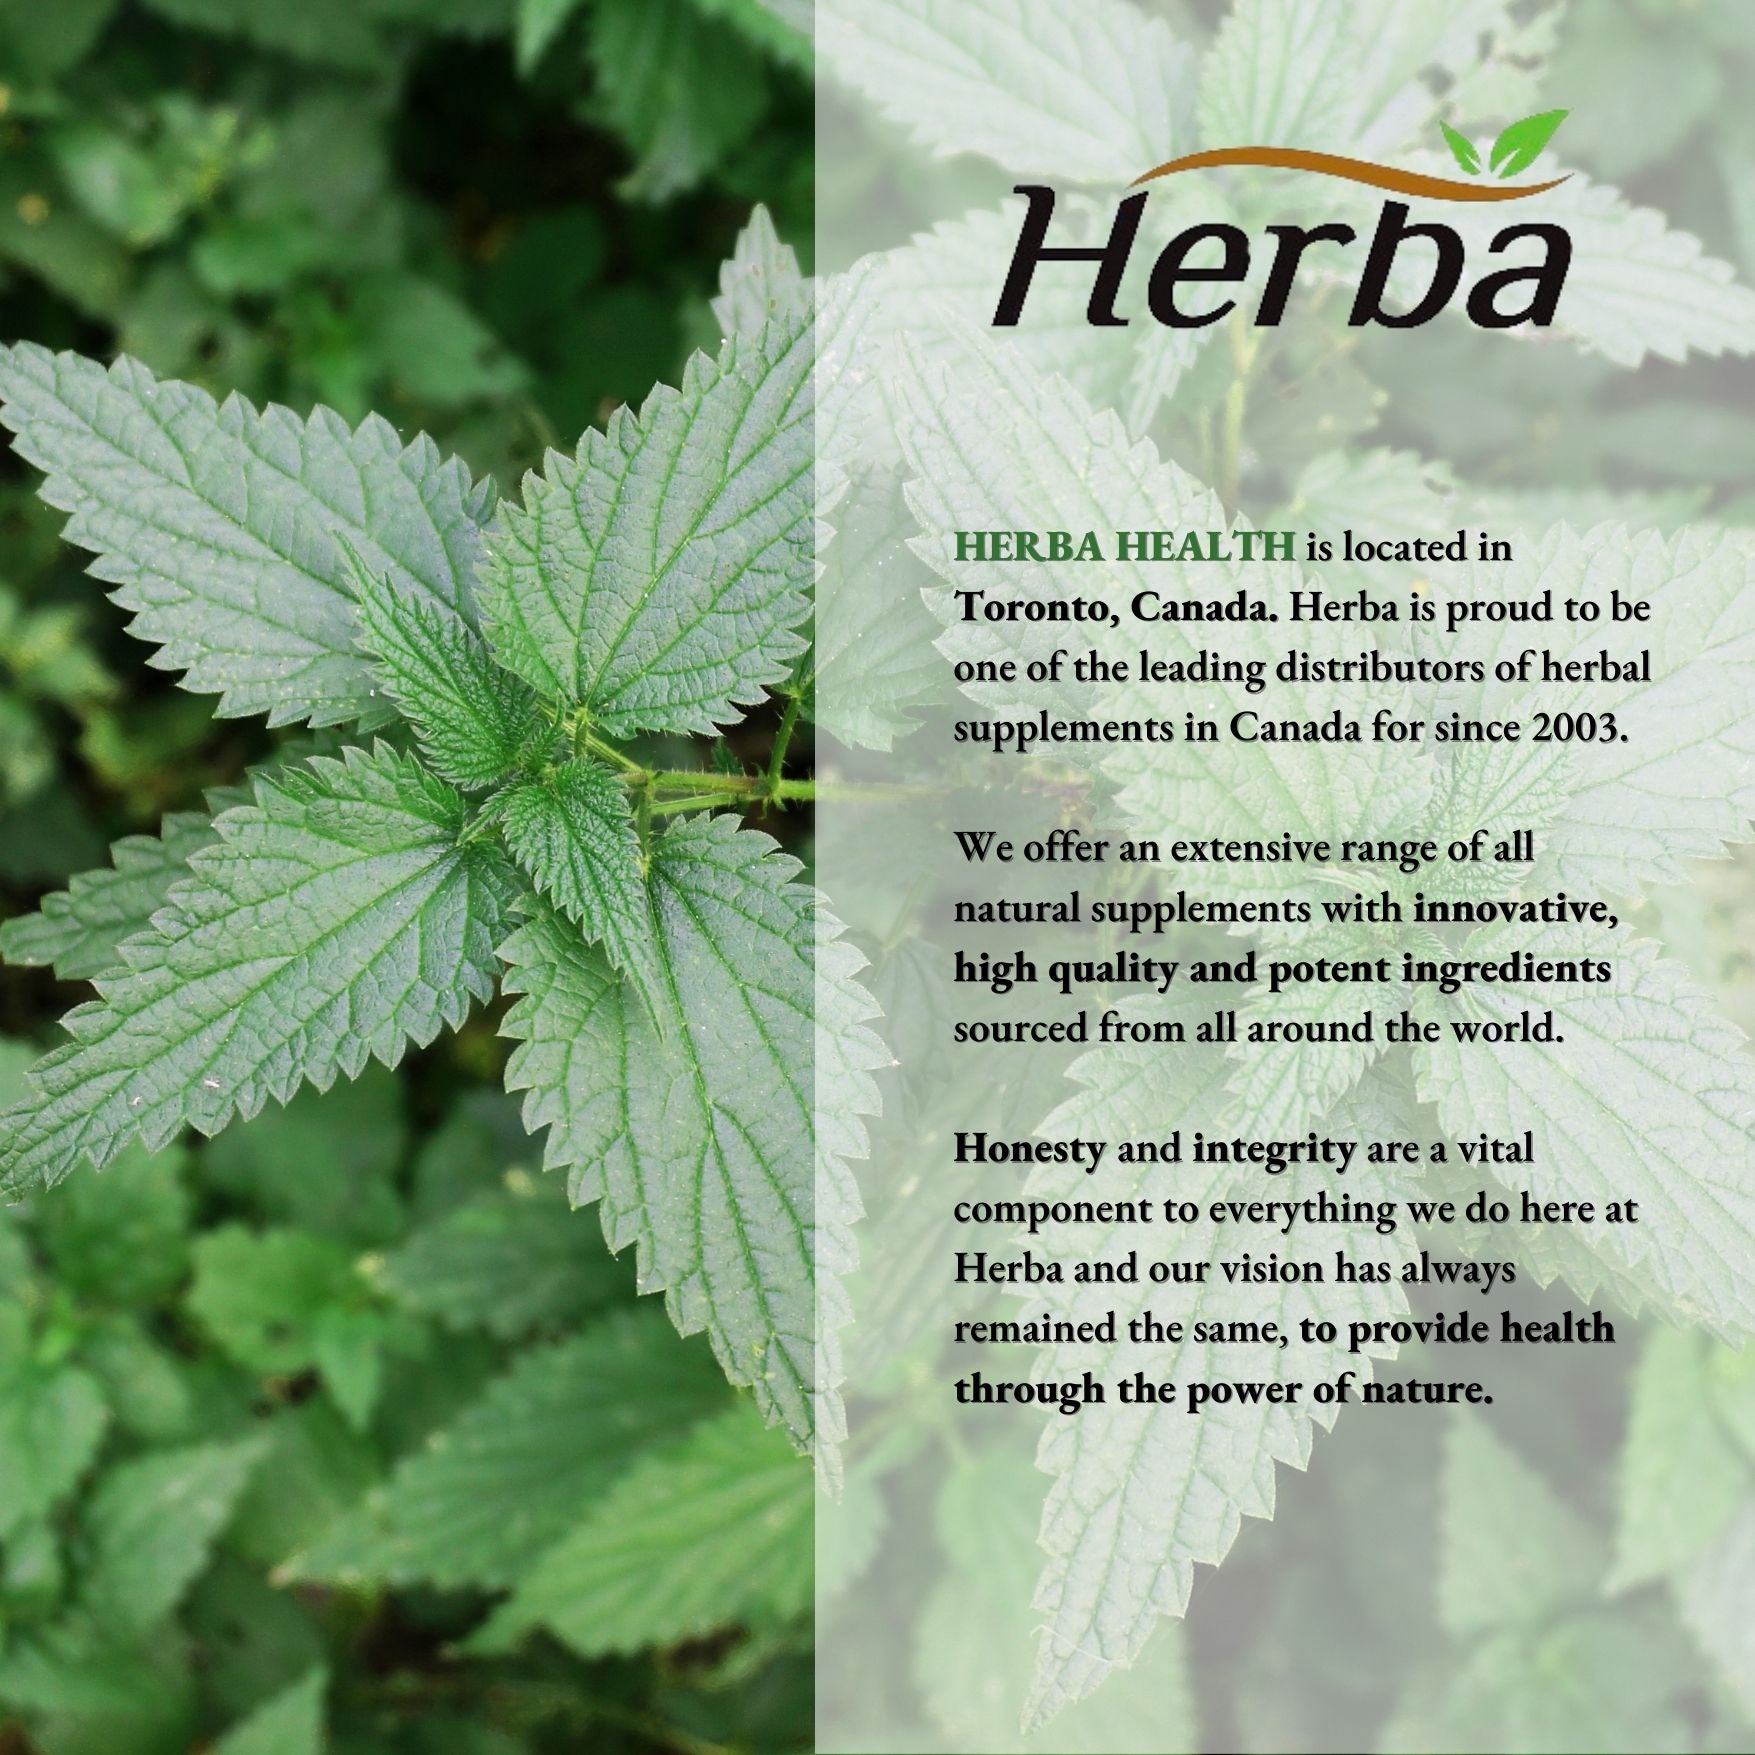 Herba Montmorency Tart Cherry Powder – 150g | 100% Organic